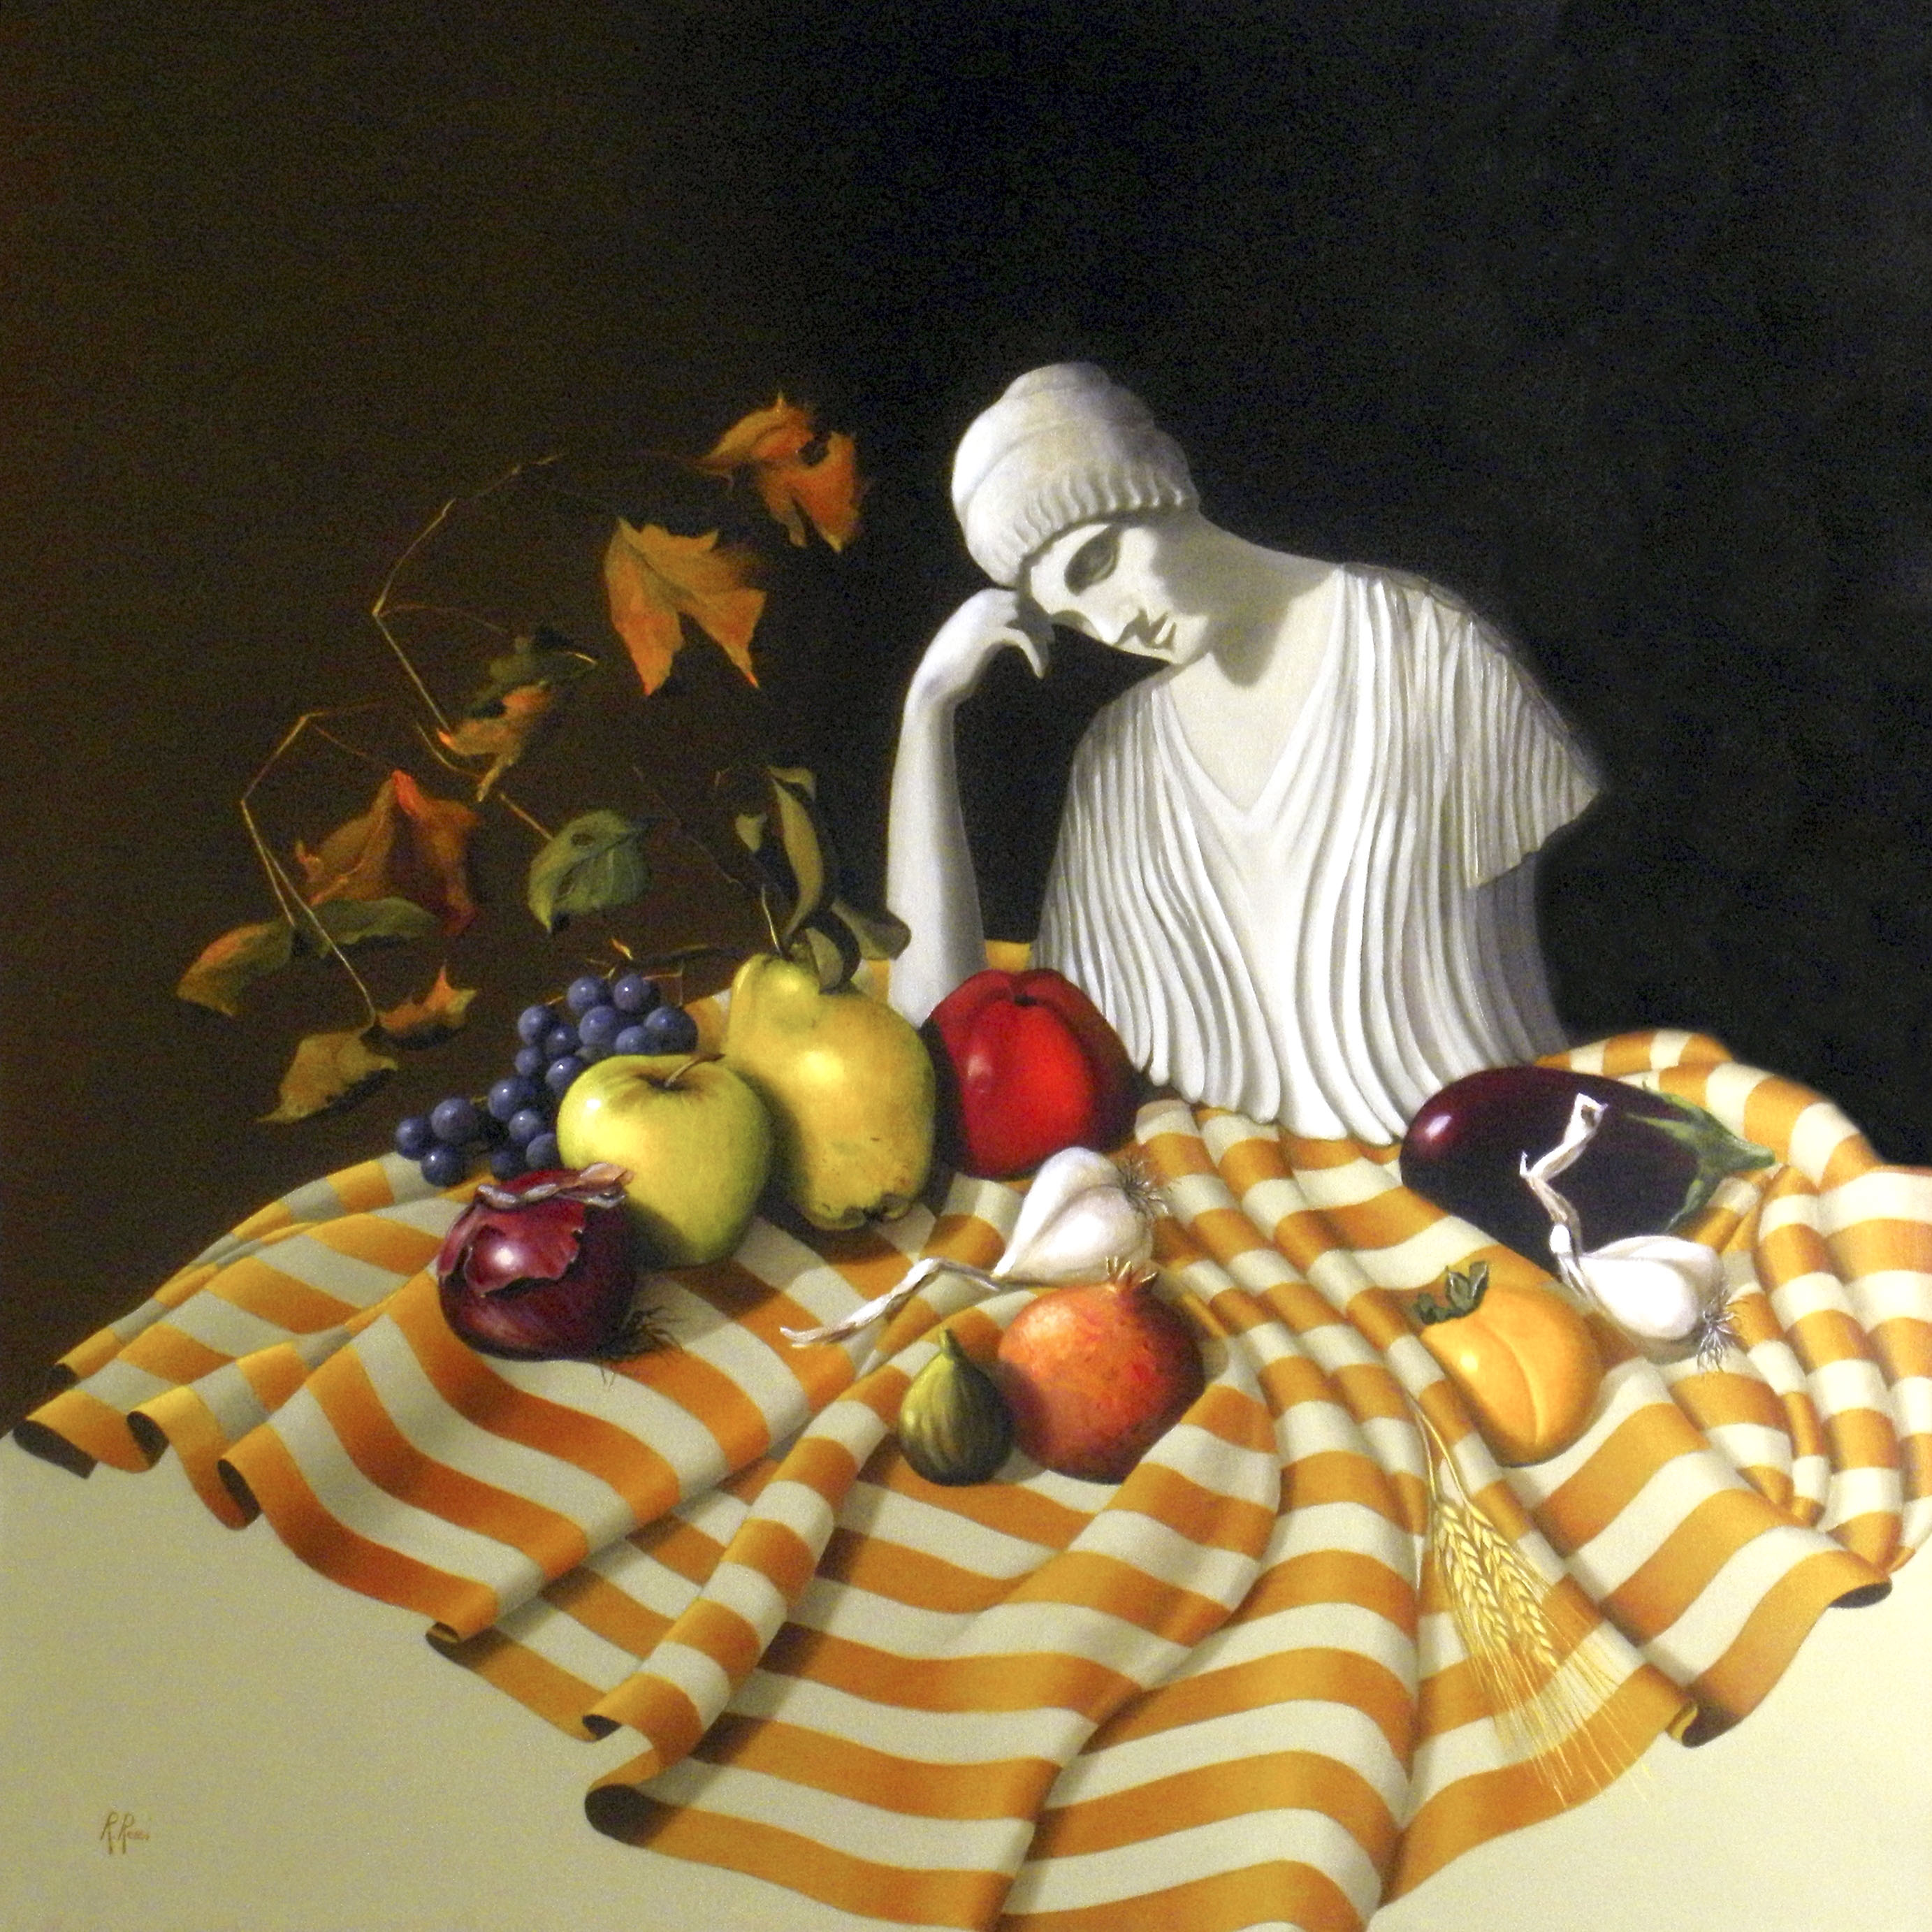 2005 roberta rossi – Demetra e i frutti della terra – olio su tela – 70 x 70